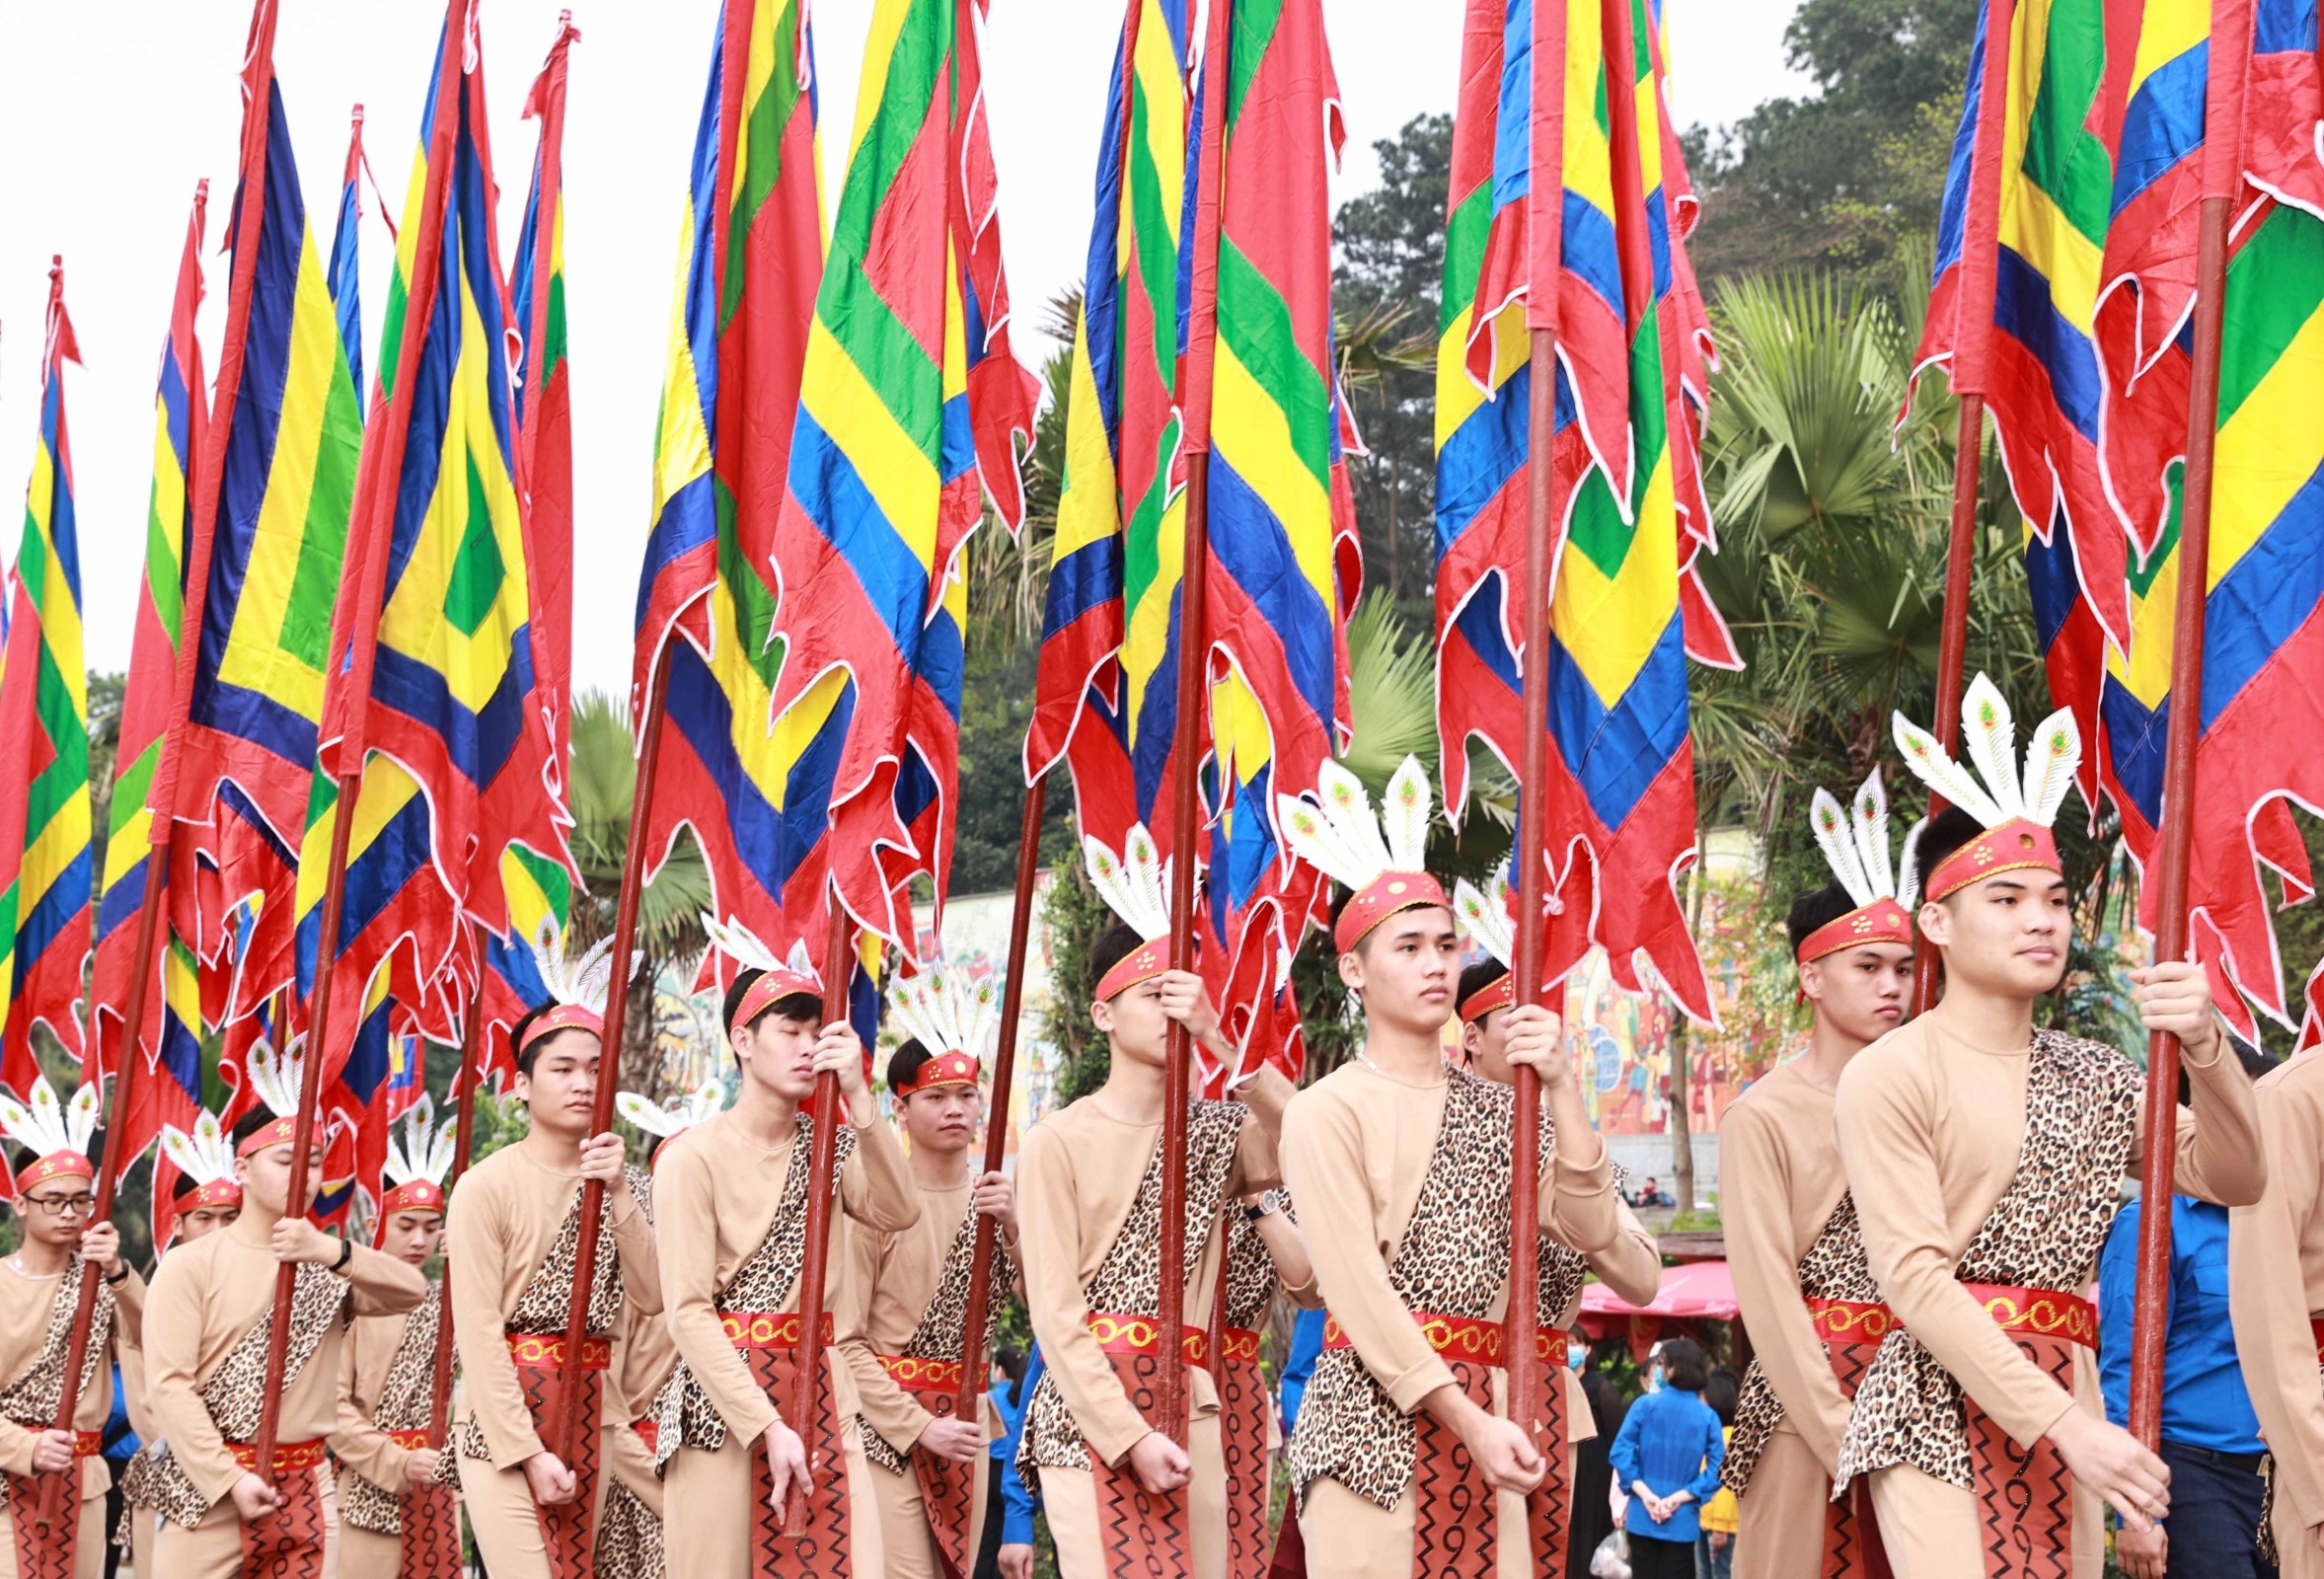 Giỗ tổ Hùng Vương: Giỗ tổ Hùng Vương là một trong những lễ hội truyền thống quan trọng nhất của dân tộc Việt Nam. Năm nay, lễ giỗ tổ Hùng Vương trở nên đặc biệt hơn khi được tổ chức ở quần thể di tích đặc biệt, tôn lên giá trị lịch sử và văn hóa của đất nước.